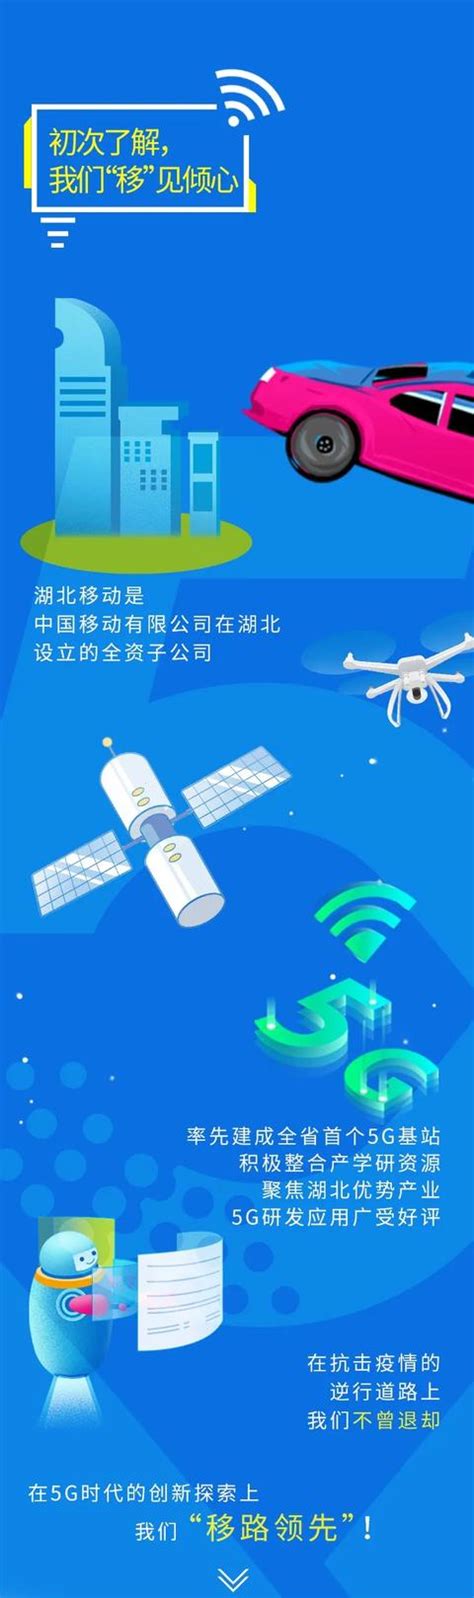 招商蛇口携手中国移动 共建湖北首个5G产业园区 - 企业 - 中国产业经济信息网